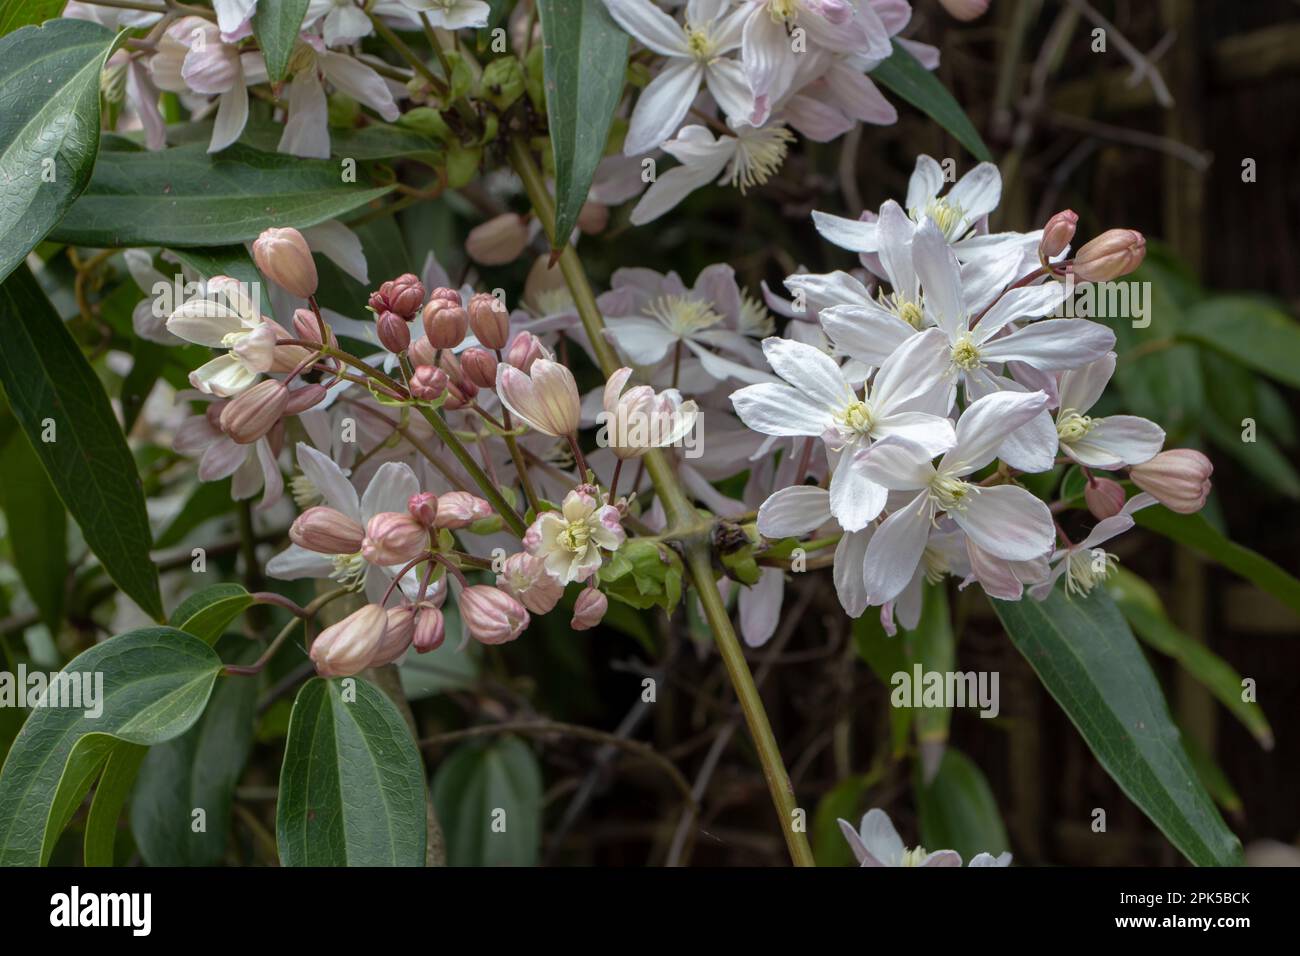 Clematis armandii oder Armand clematis oder immergrüne Clematis weiße rosa Blumen und Knospen. Blühende Kletterpflanze. Stockfoto